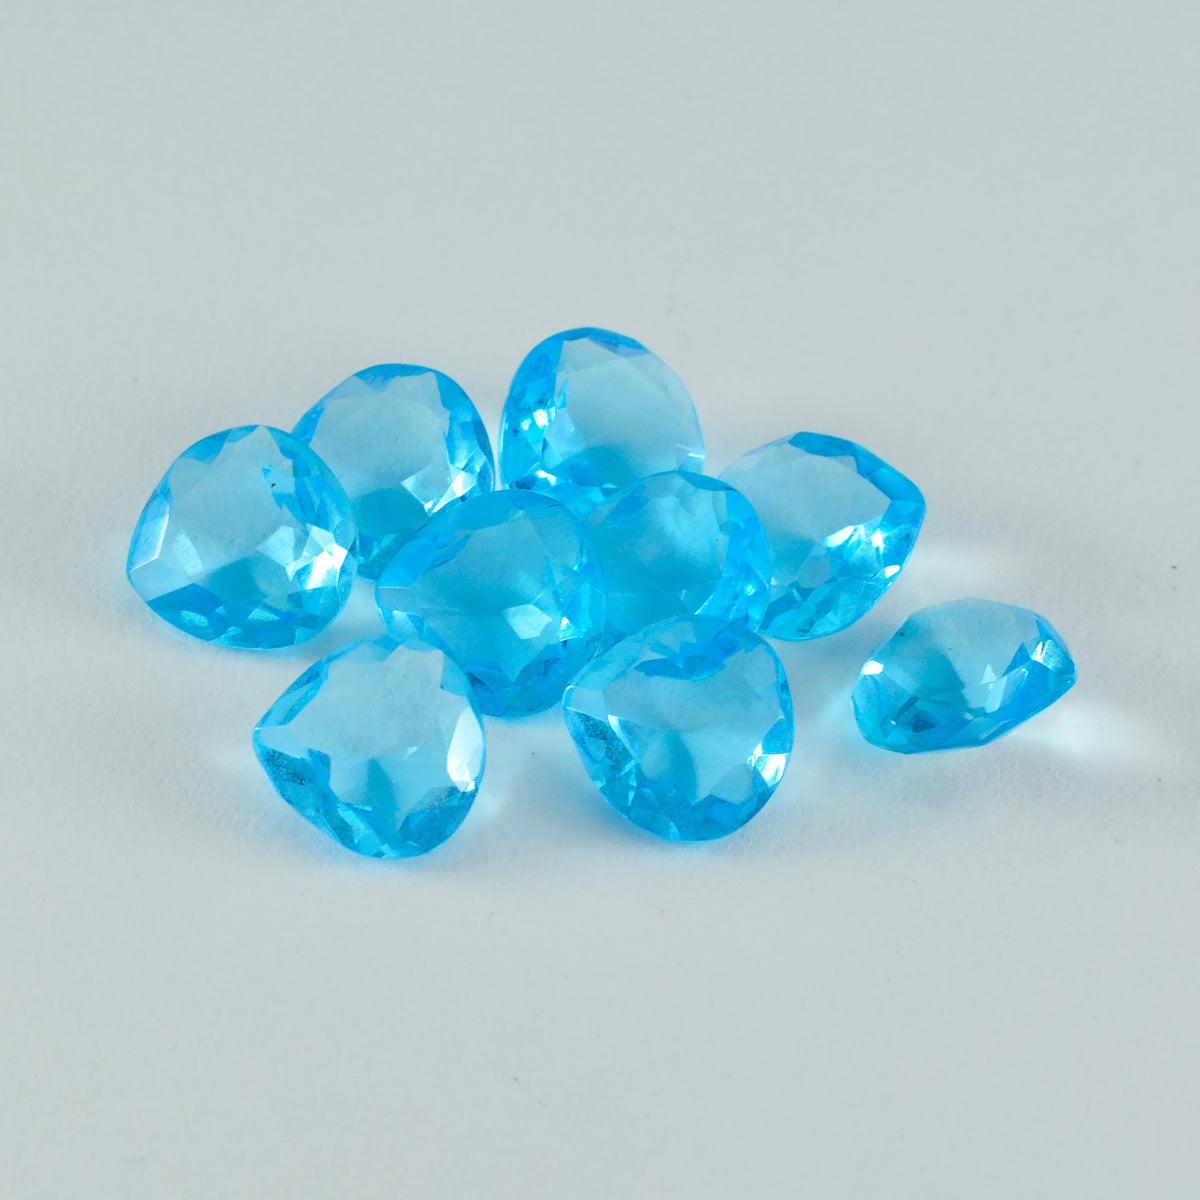 Riyogems 1 pieza Topacio azul CZ facetado 11x11mm forma de corazón hermosa gema de calidad